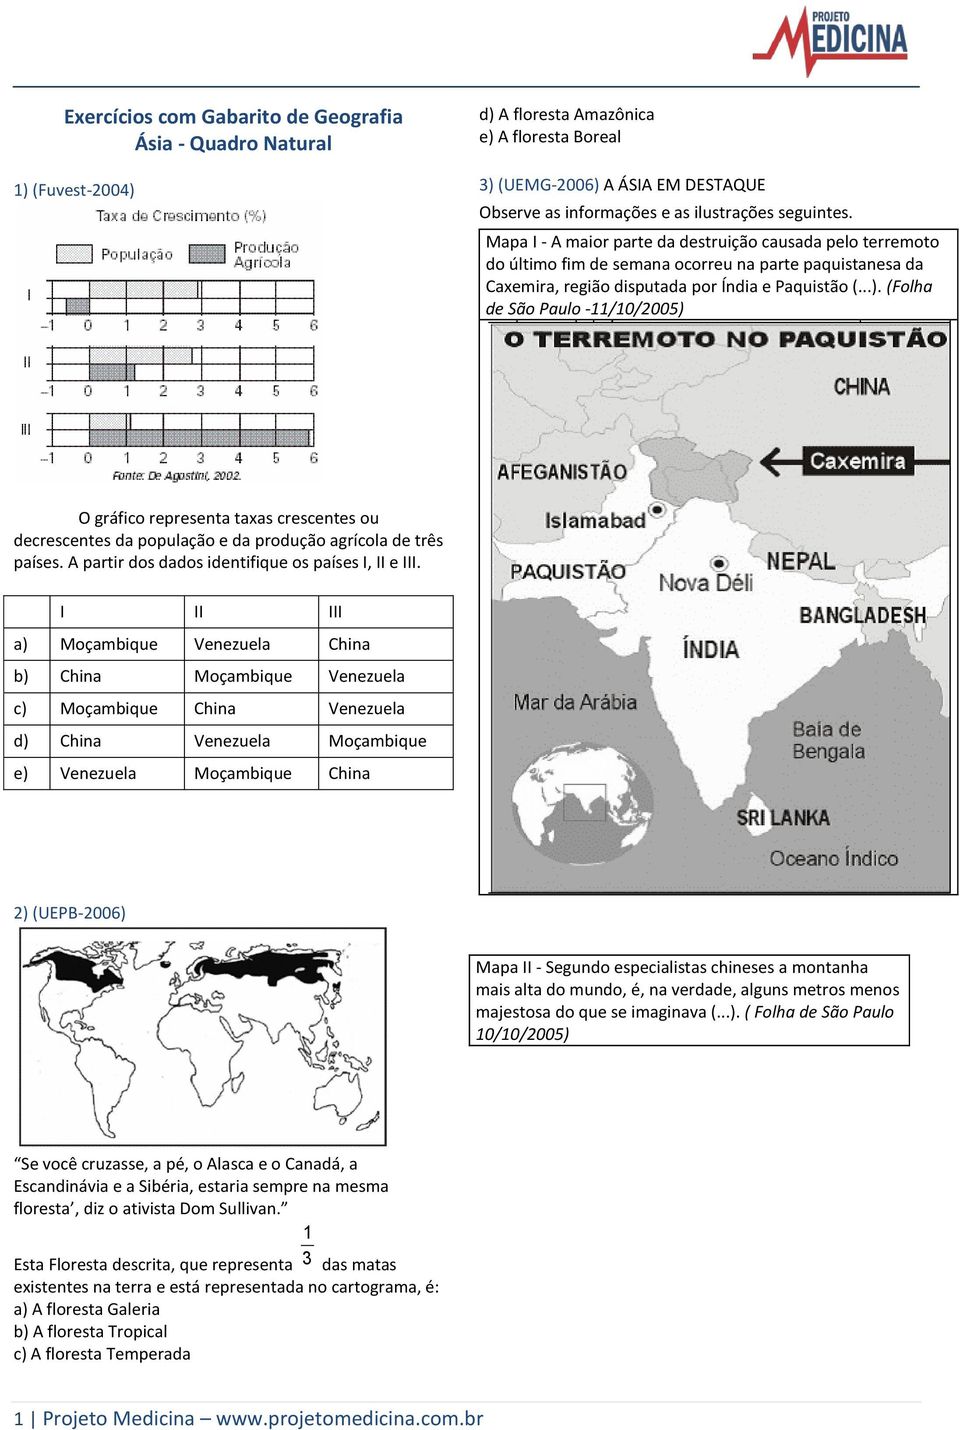 (Folha de São Paulo -11/10/2005) O gráfico representa taxas crescentes ou decrescentes da população e da produção agrícola de três países. A partir dos dados identifique os países I, II e III.